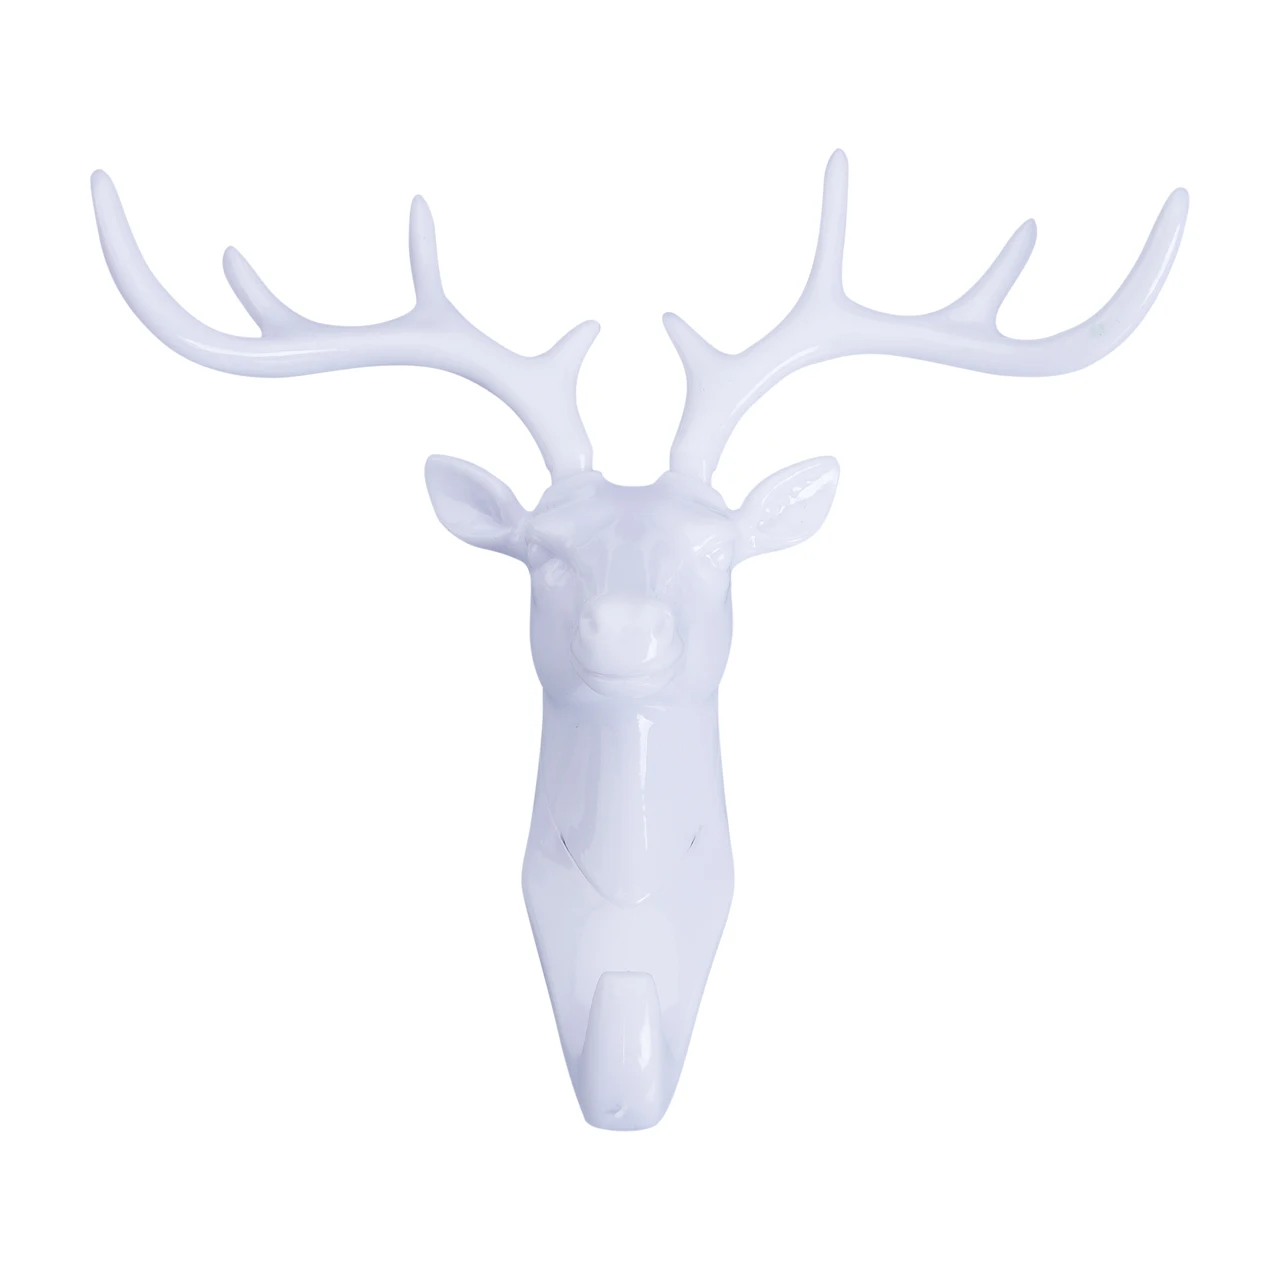 1 xFashion животное олень укладка голова крючок настенная вешалка держатель для стойки пластиковый домашний декор - Цвет: Белый